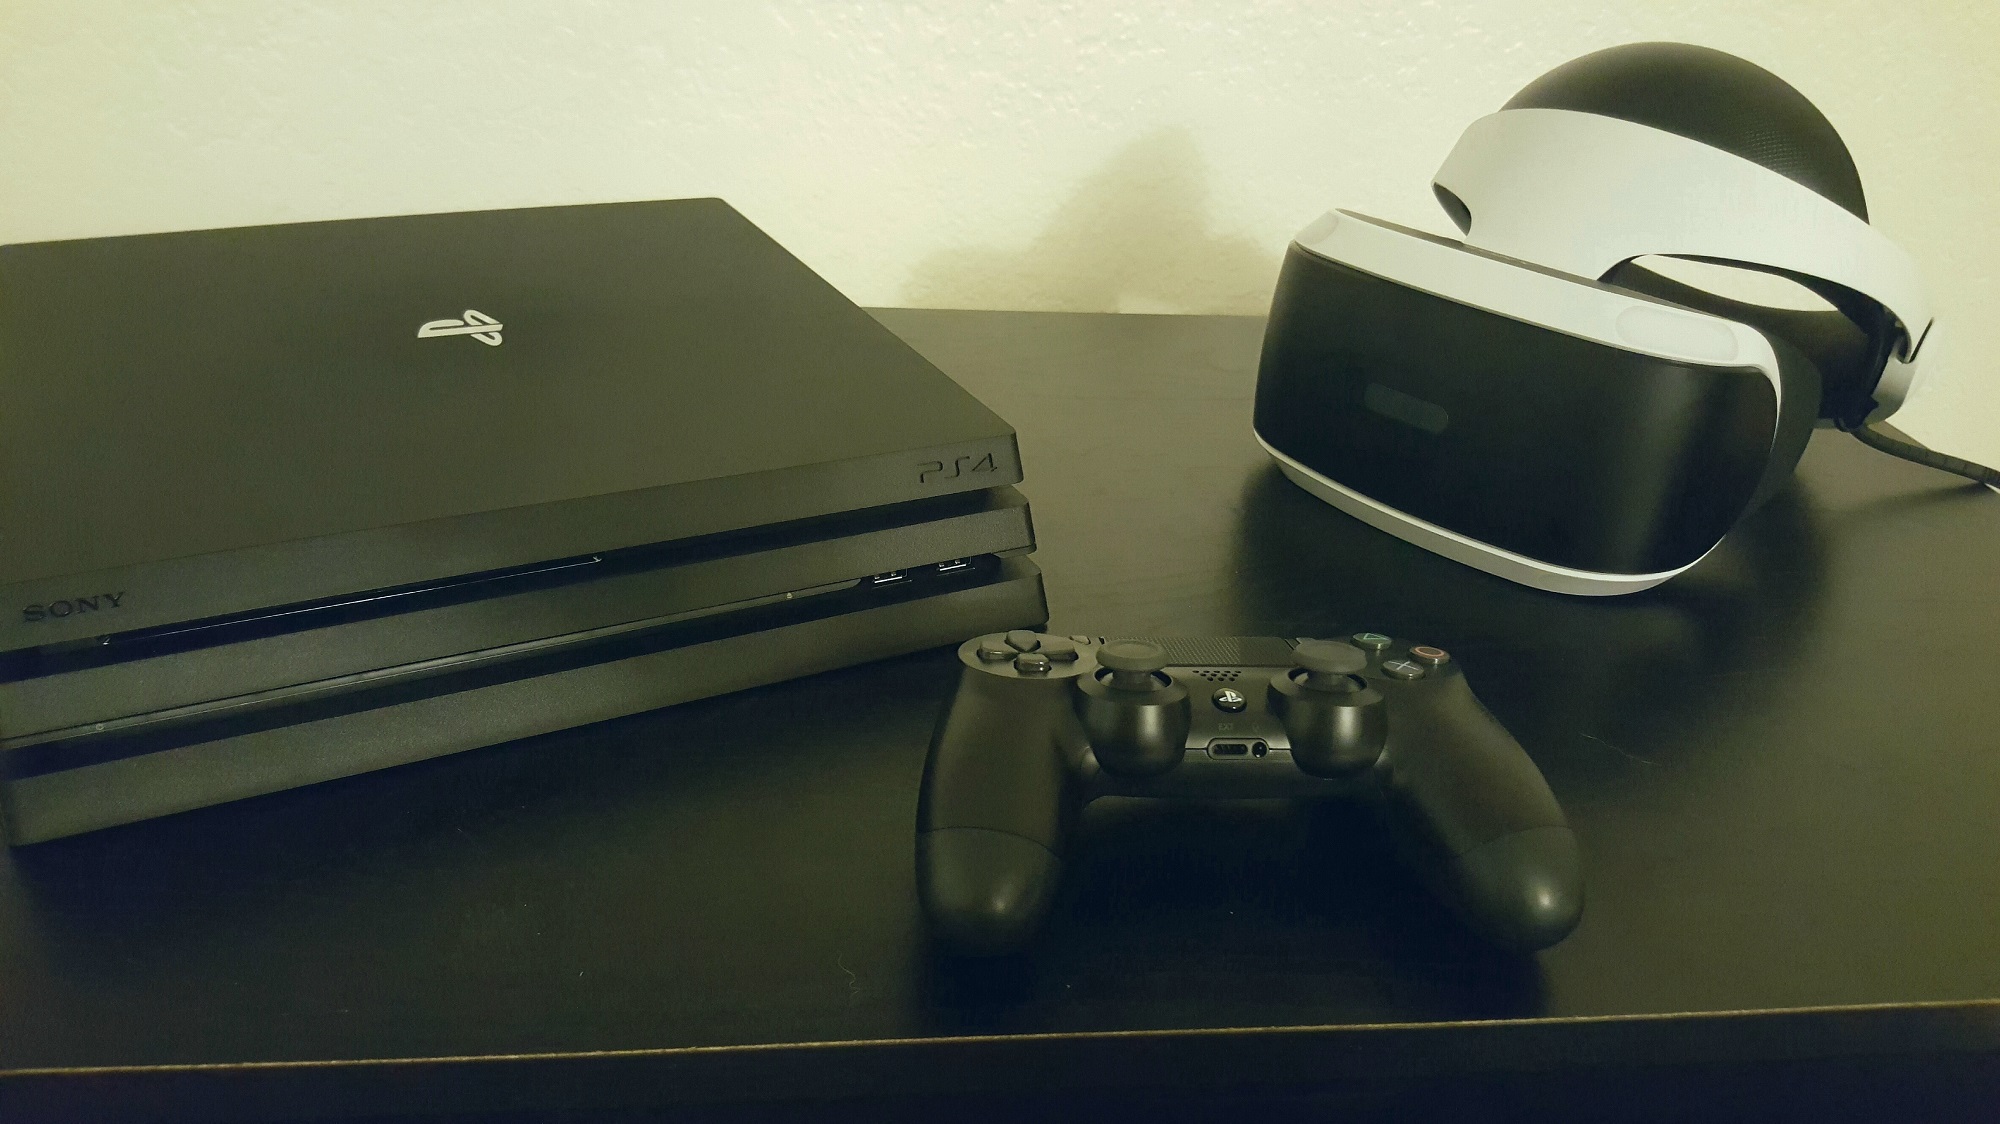 forsinke Forhåbentlig tidsskrift PlayStation 4 Pro Review: Does It Improve The PS VR Experience?